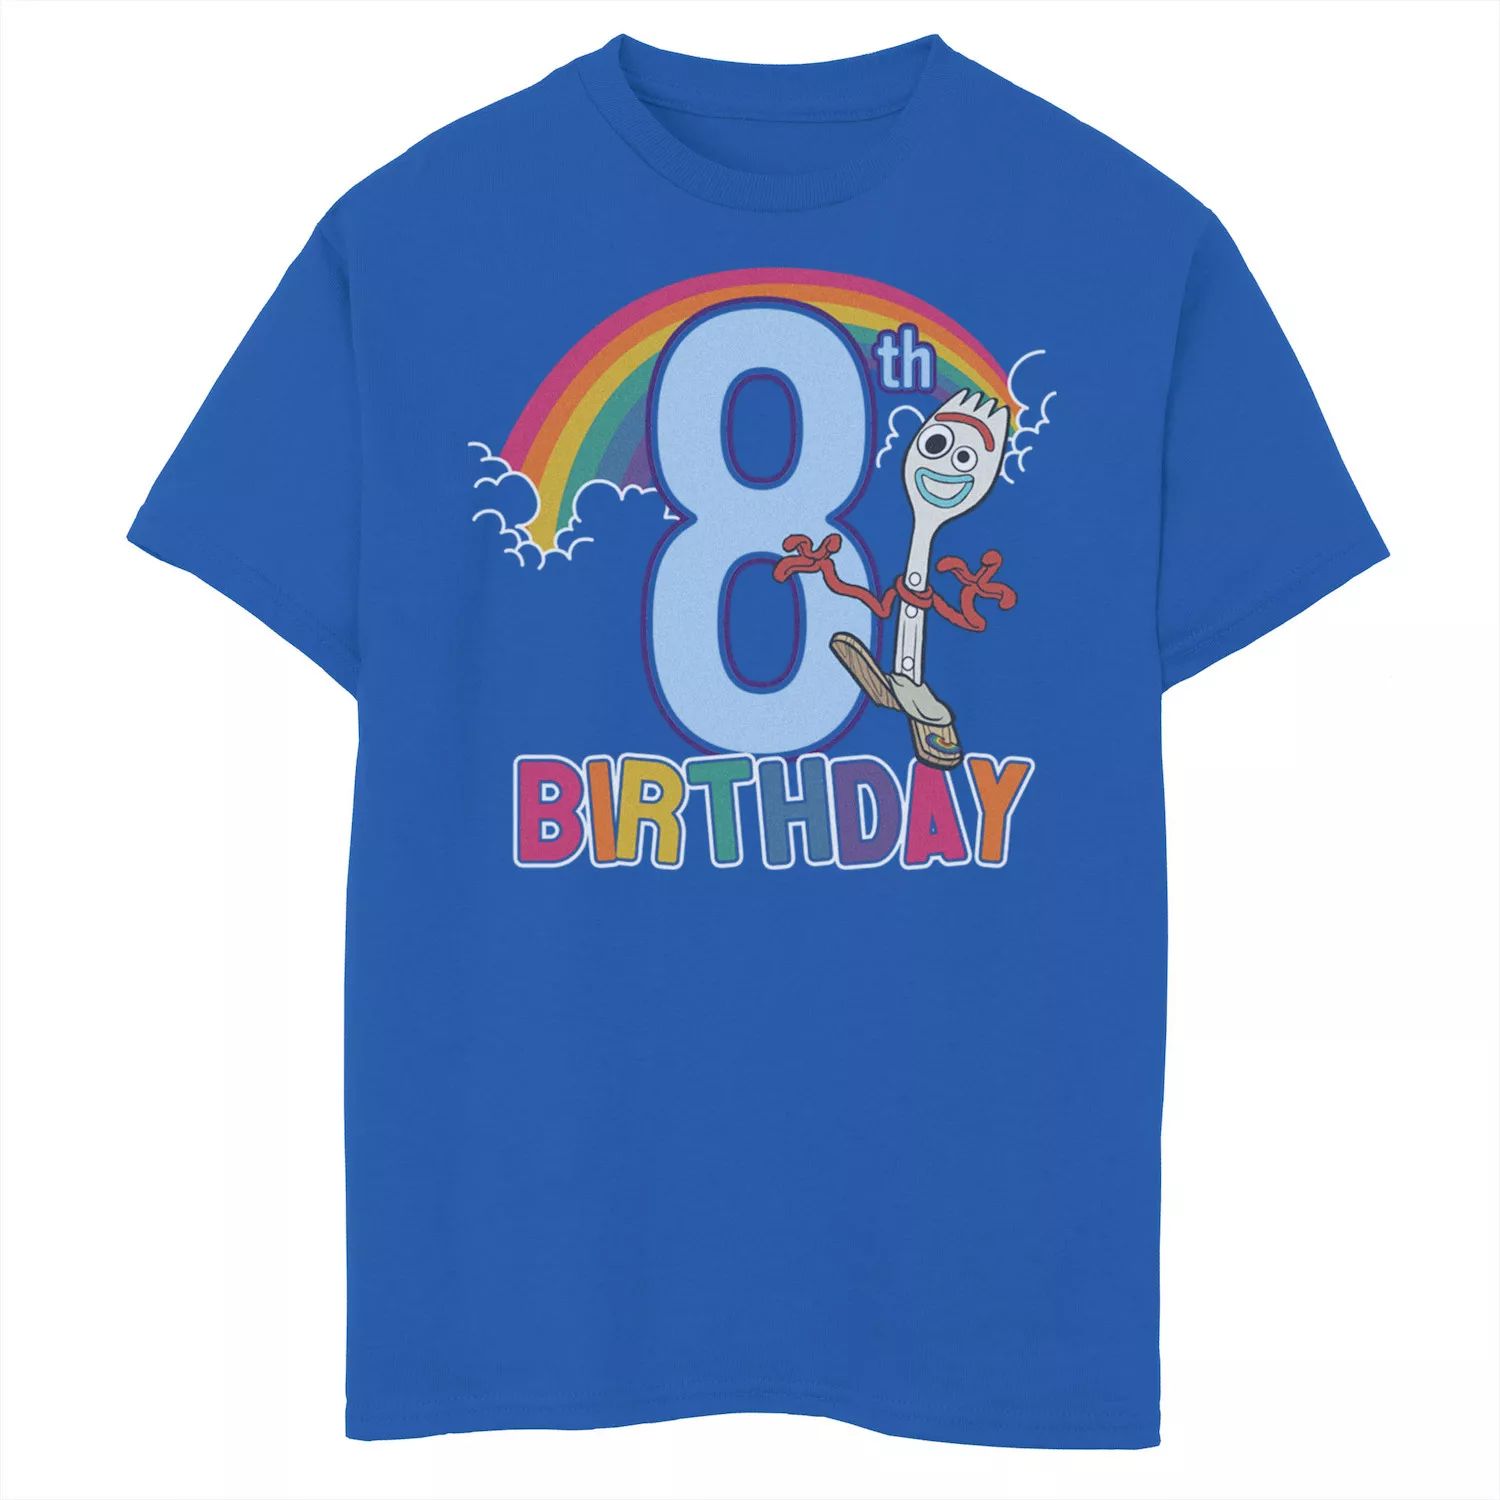 Футболка Forky с рисунком «8th Rainbow» на день рождения для мальчиков 8–20 лет Disney/Pixar «История игрушек 4» Disney / Pixar футболка forky с рисунком на 3 й день рождения для мальчиков 8–20 лет disney pixar история игрушек 4 disney pixar